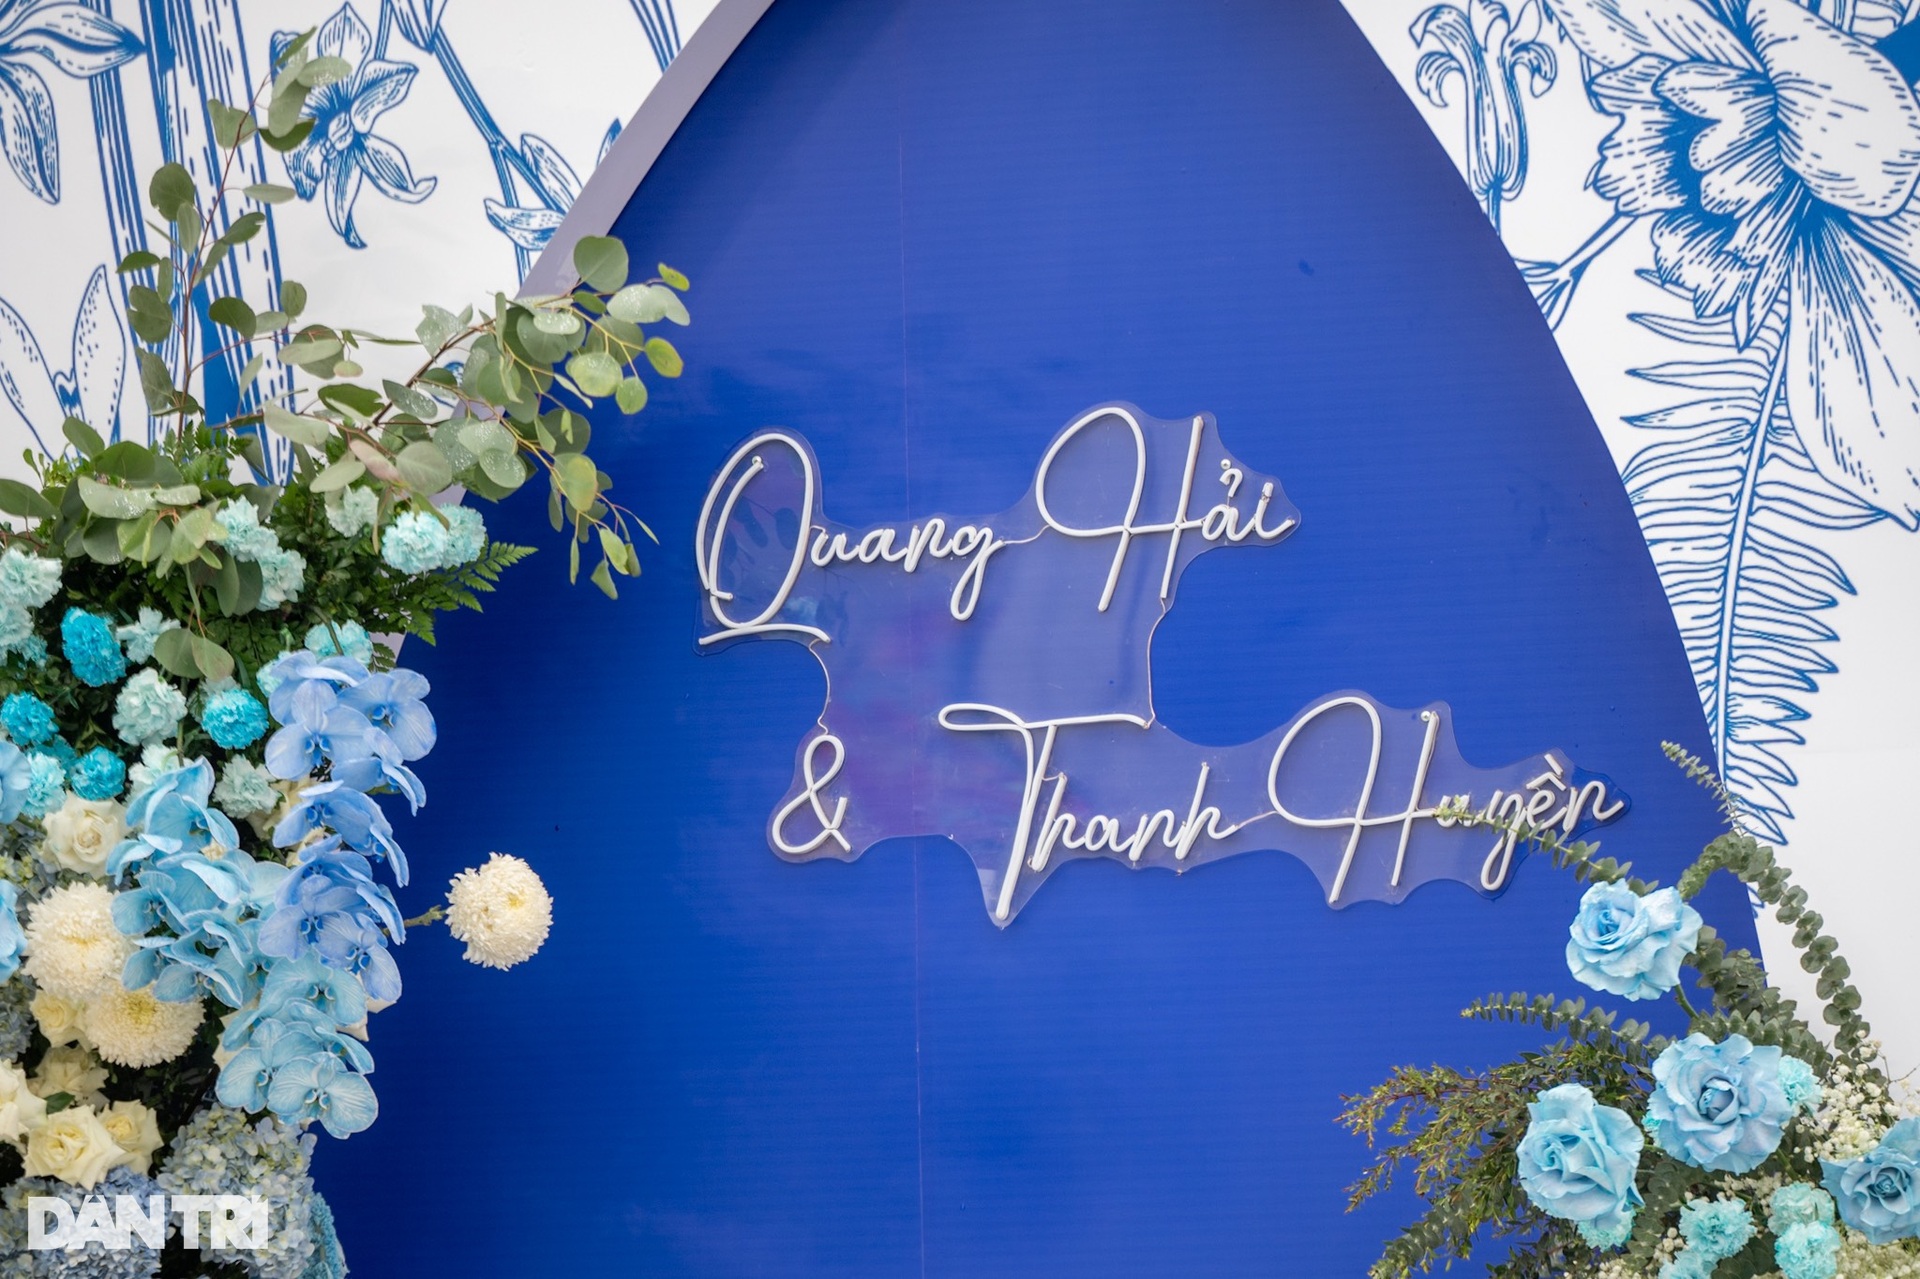 Đám cưới Quang Hải: Dựng rạp 2.000m2 đón 1.200 khách, rước dâu bằng xe sang - 5